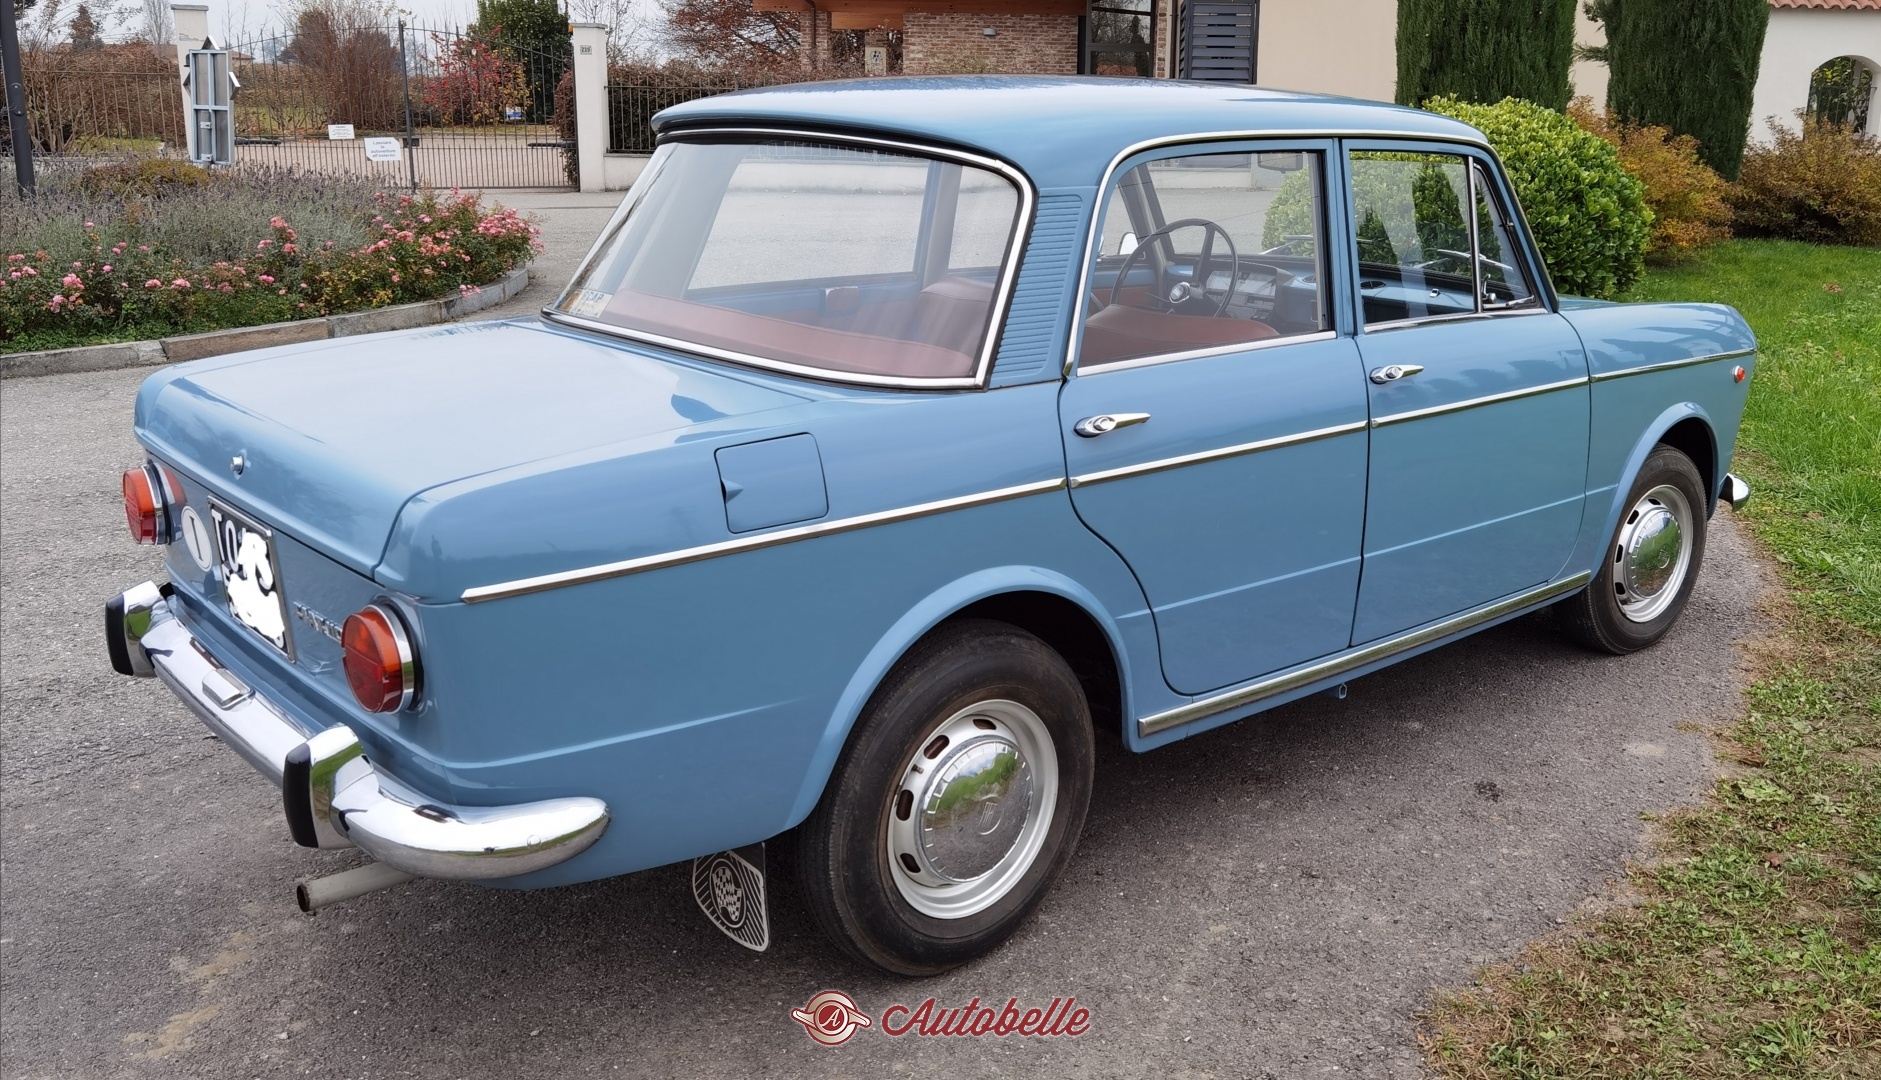 For sale Fiat 1100r anno 1968